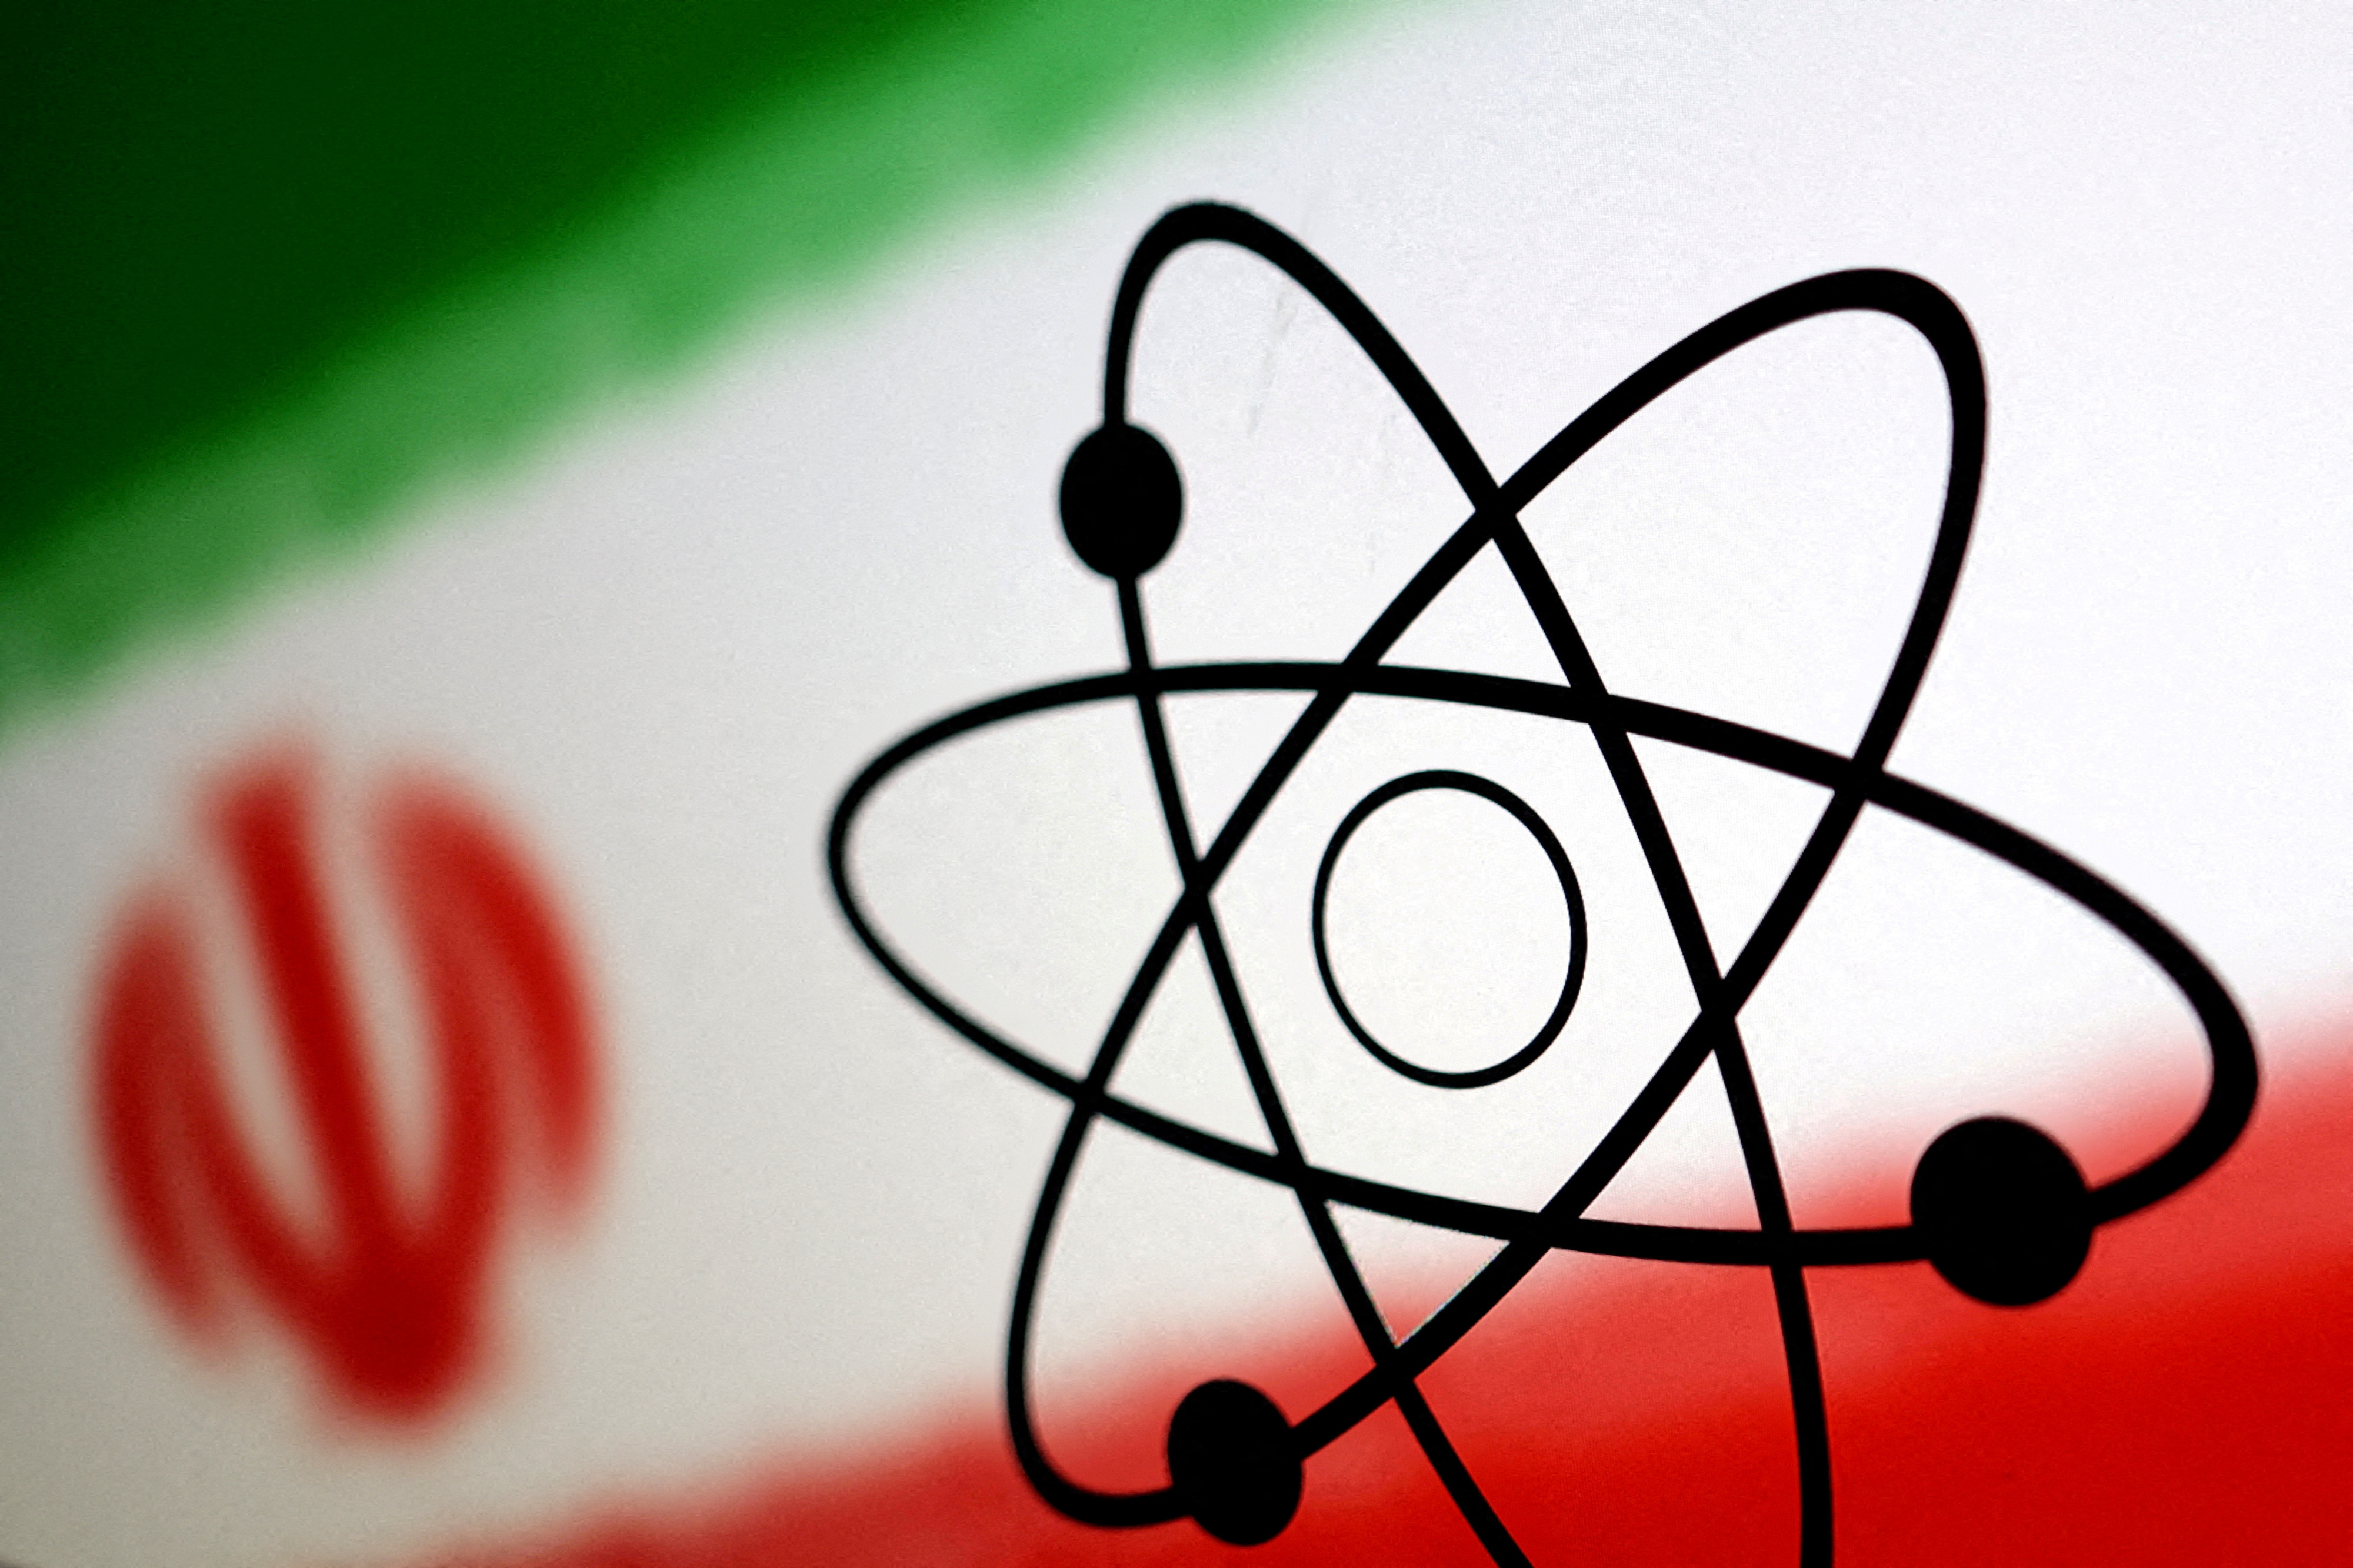 En cas de riposte d'Israël, l'Iran menace d'attaquer des centrales nucléaires israéliennes